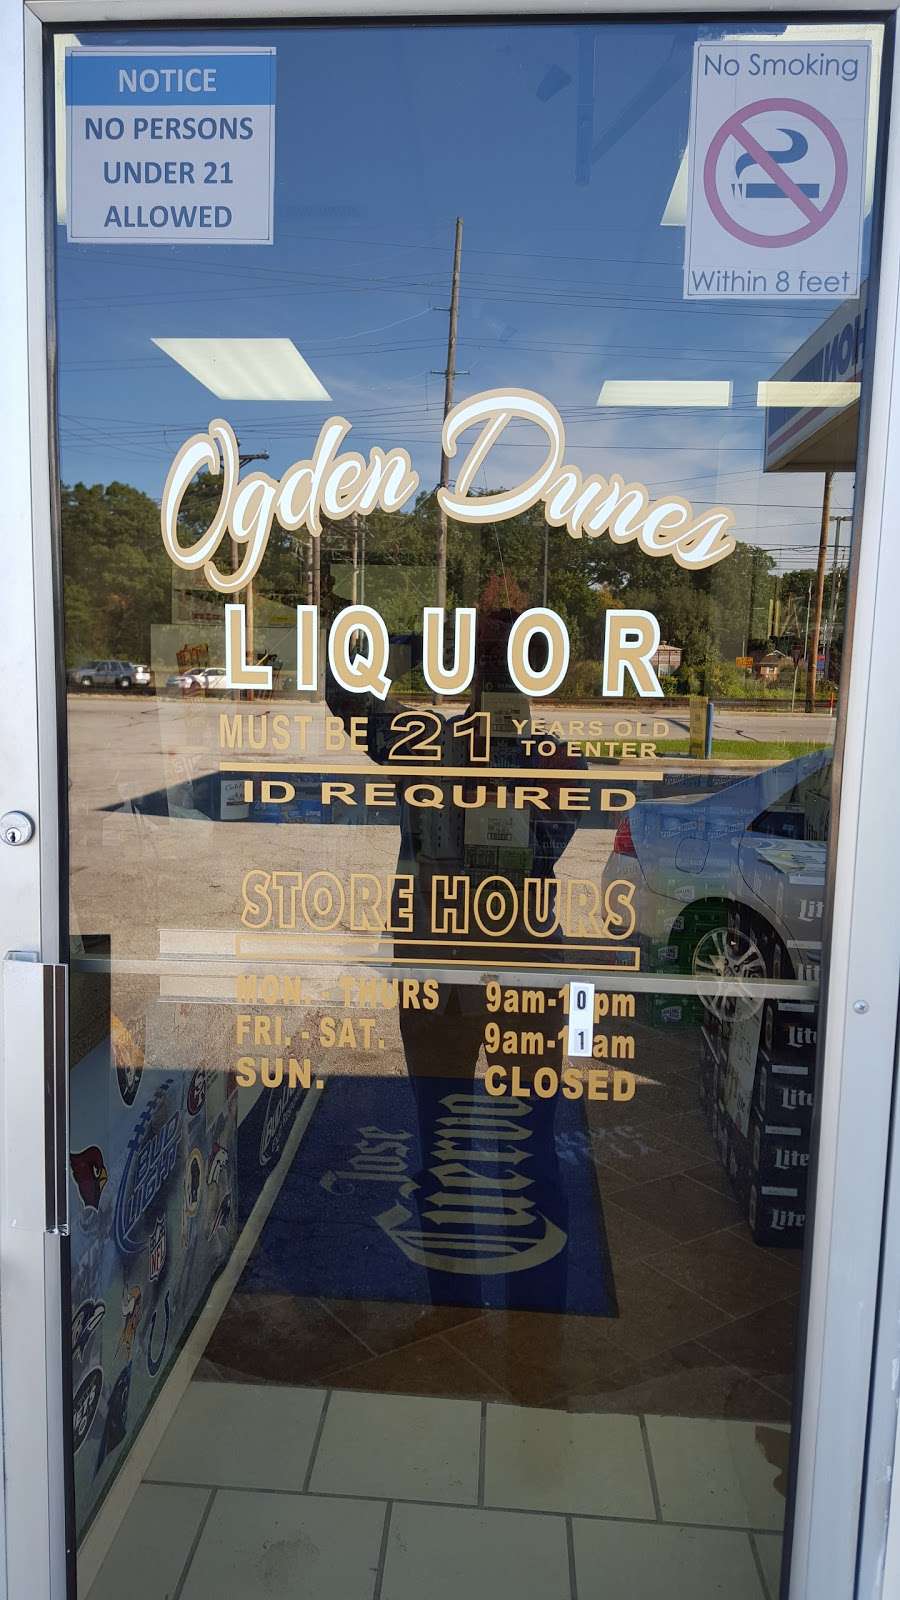 Ogden Dunes Liquors | #C, 5865 US-12, Ogden Dunes, IN 46368 | Phone: (219) 728-4040